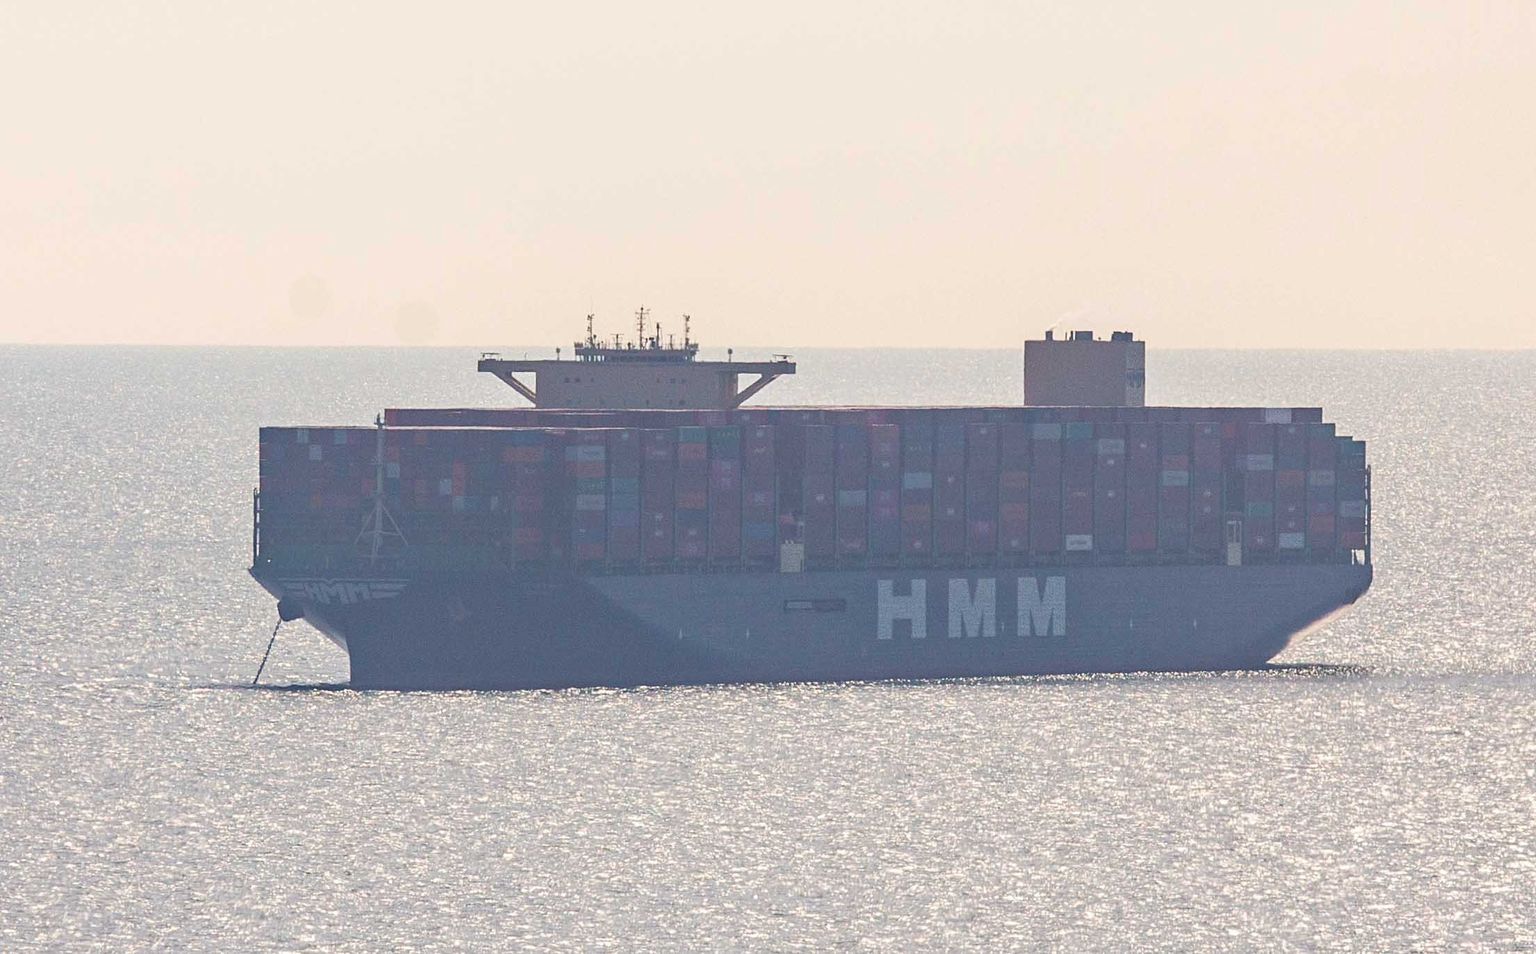 Merendusfirma HMM suur konteinerlaev, millel on Aasiast pärit kaup, sõitmas 21. septembril 2021 Suurbritannia Devoni ranniku lähedal. Laev liikus Hollandisse Rotterdami